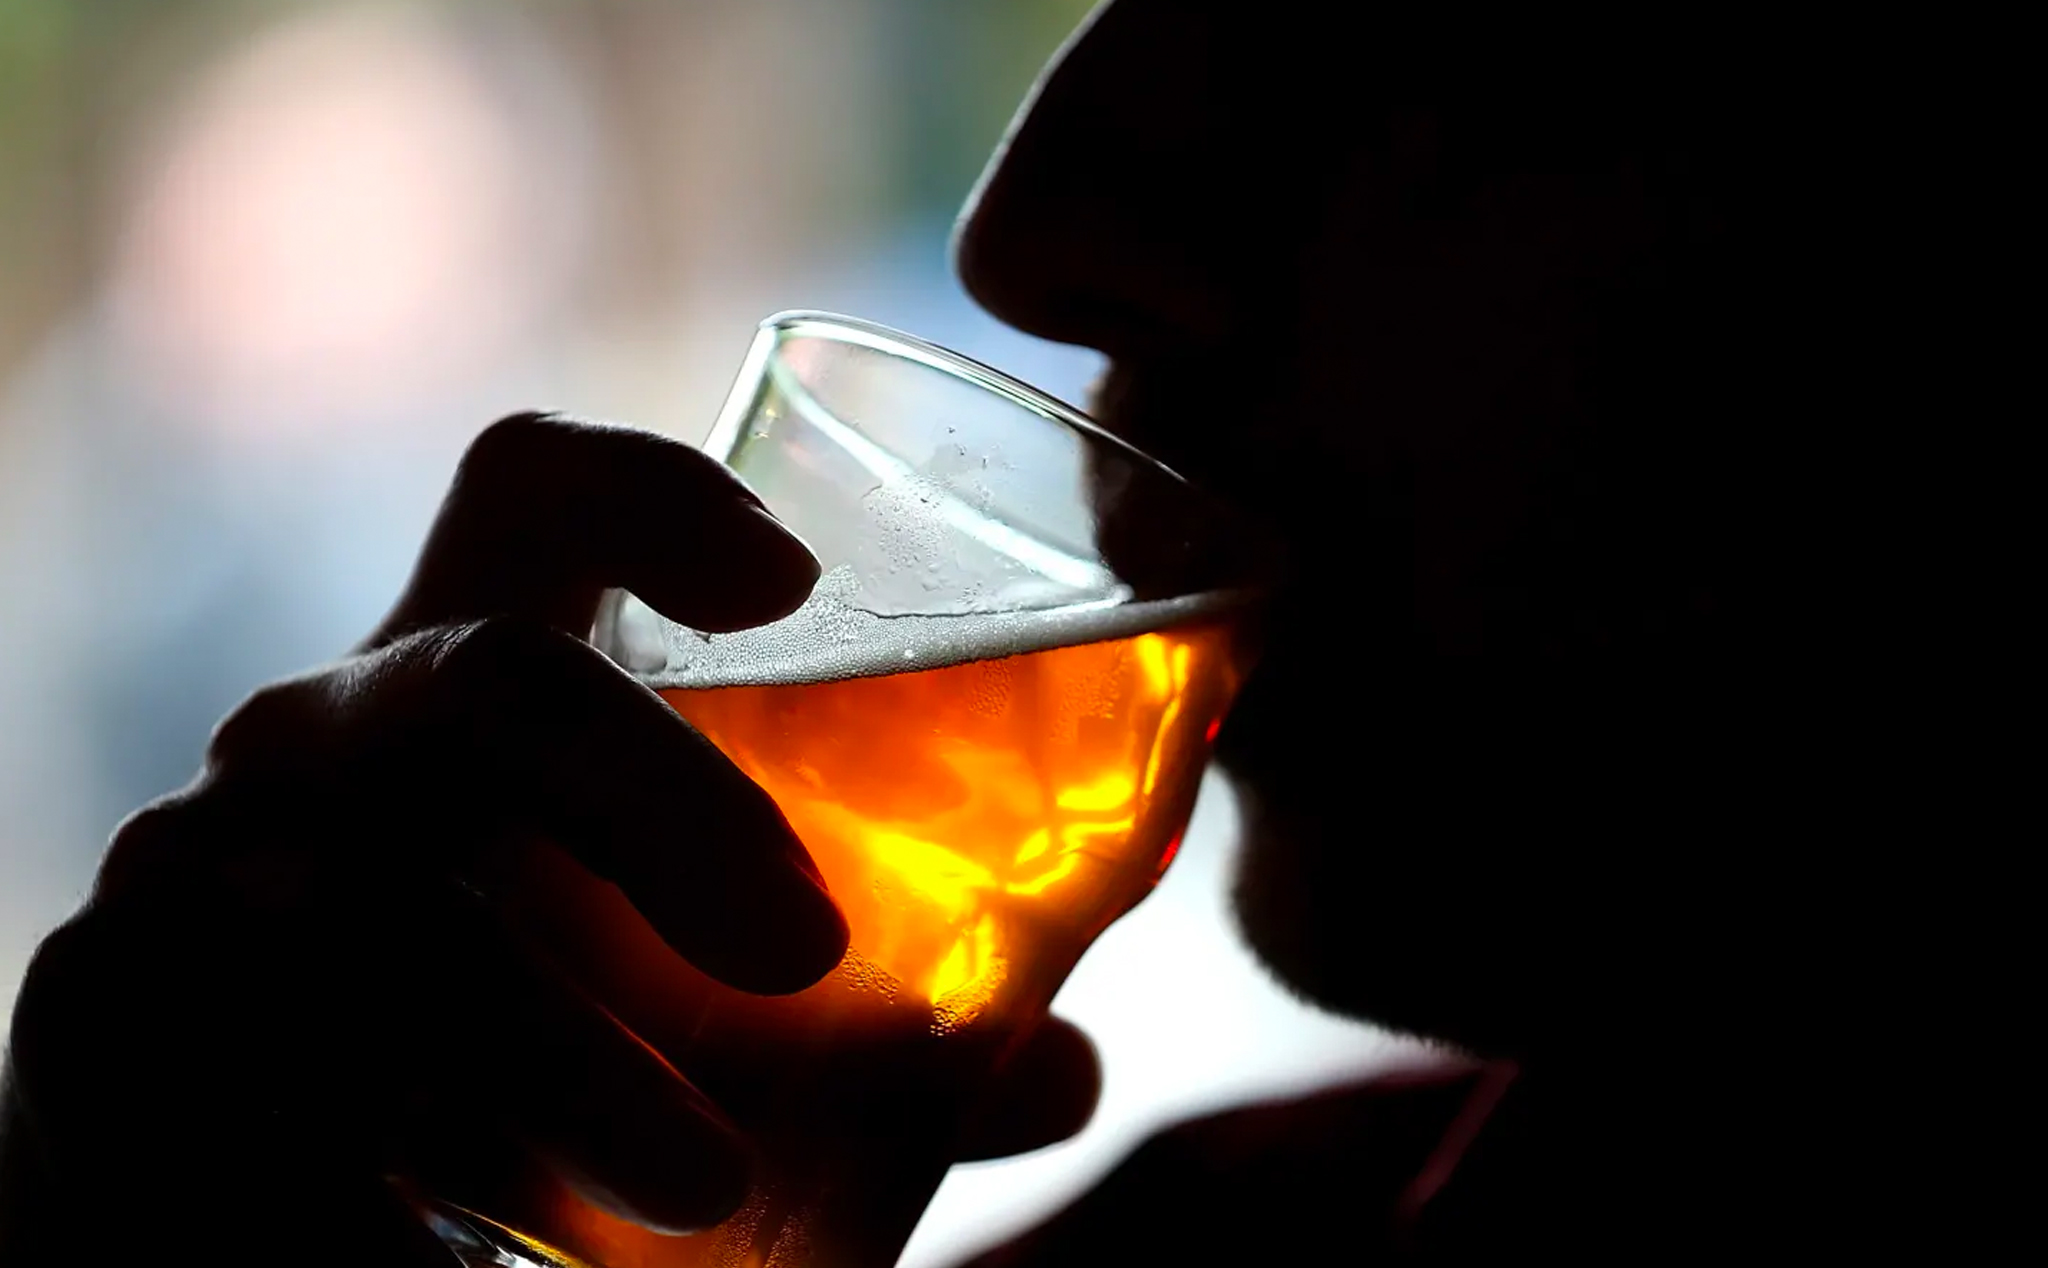 Đây là những độ tuổi bị ảnh hưởng tiêu cực nhất khi uống rượu